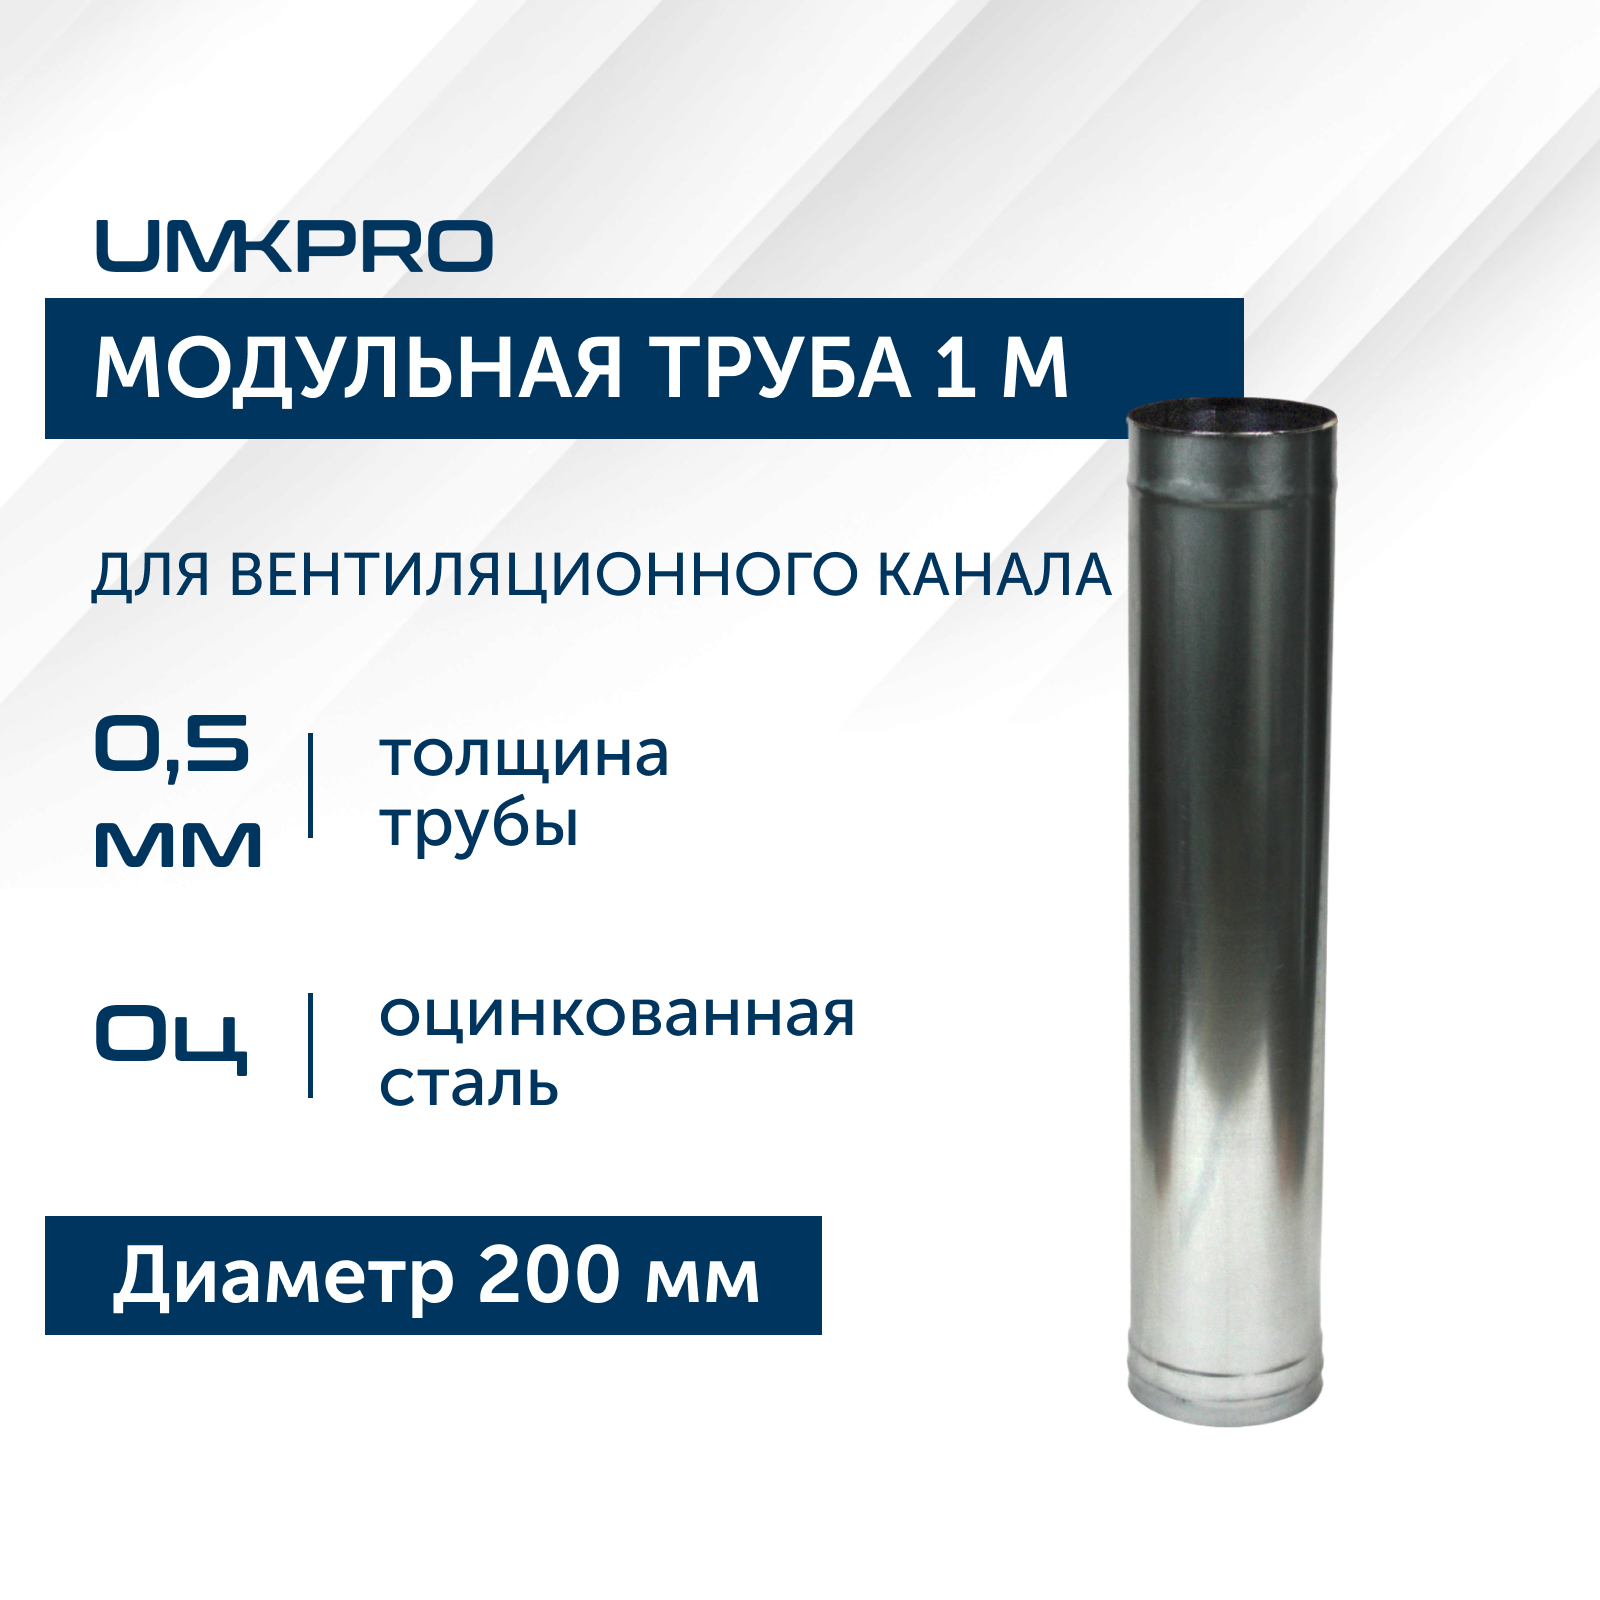 Труба модульная для дымохода 1 м UMKPRO, D 200, Оц/0,5мм модульная прихожая горизонт 18